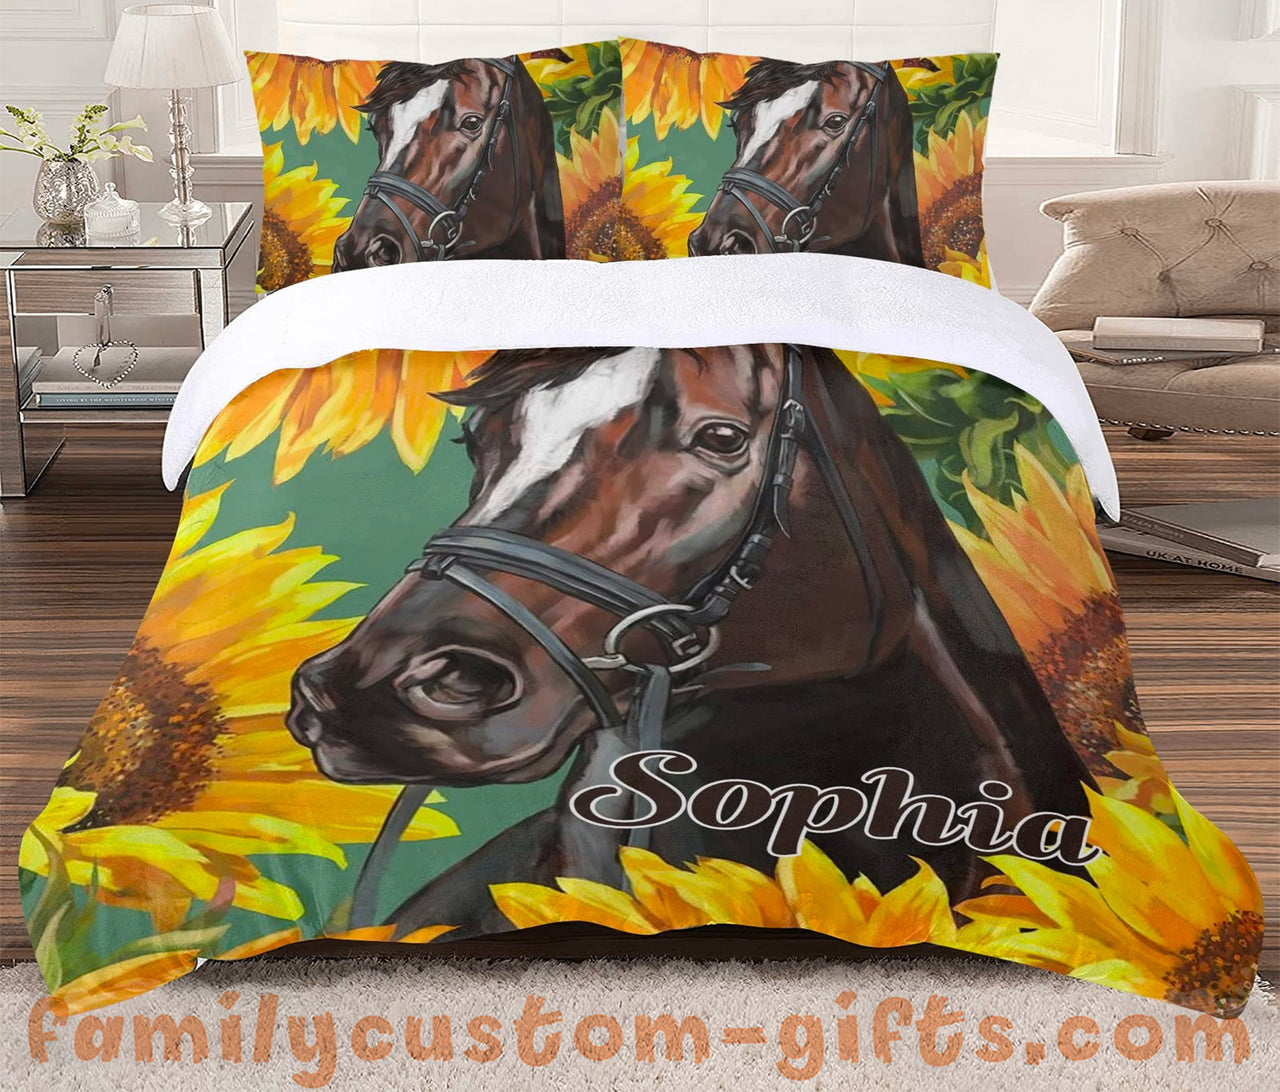 Custom Quilt Sets Horse Sunflower Premium Quilt Bedding for Boys Girls Men Women